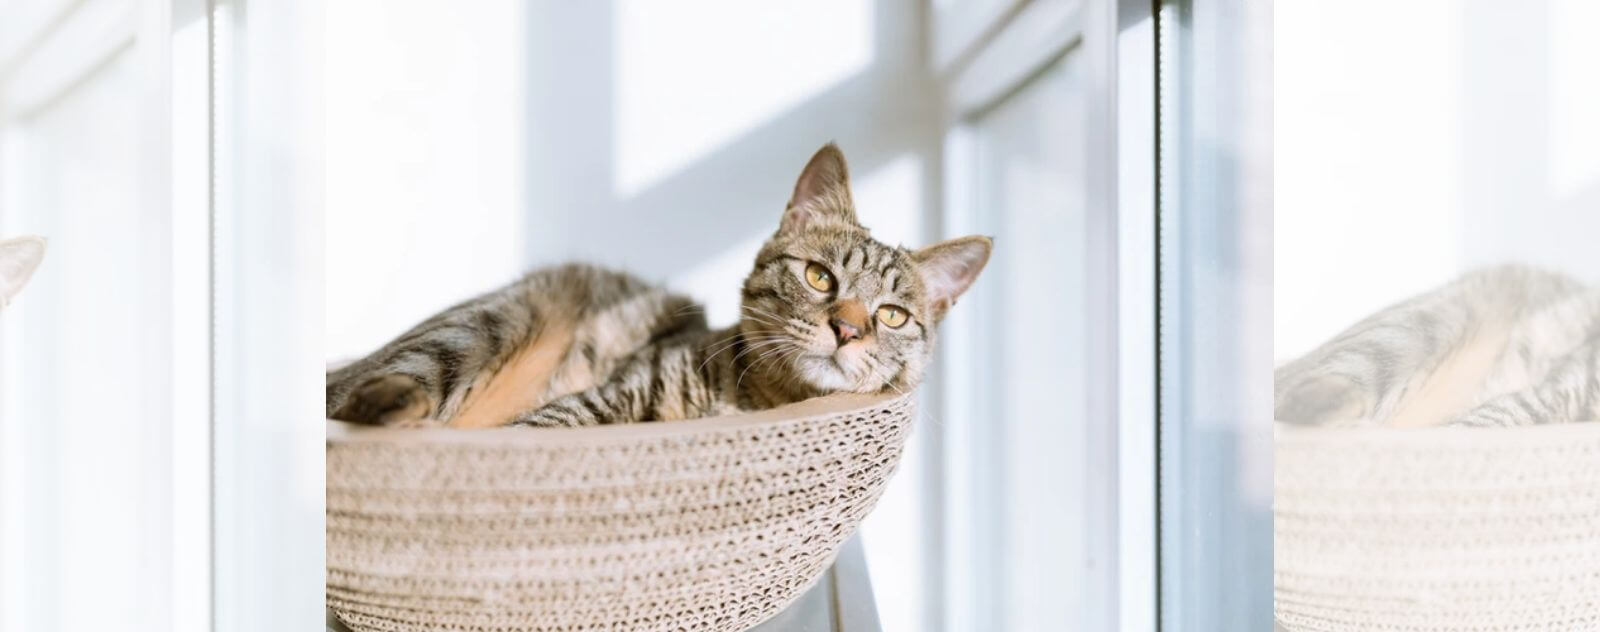 Gato doméstico en su cesta en altura junto a una ventana en una casa